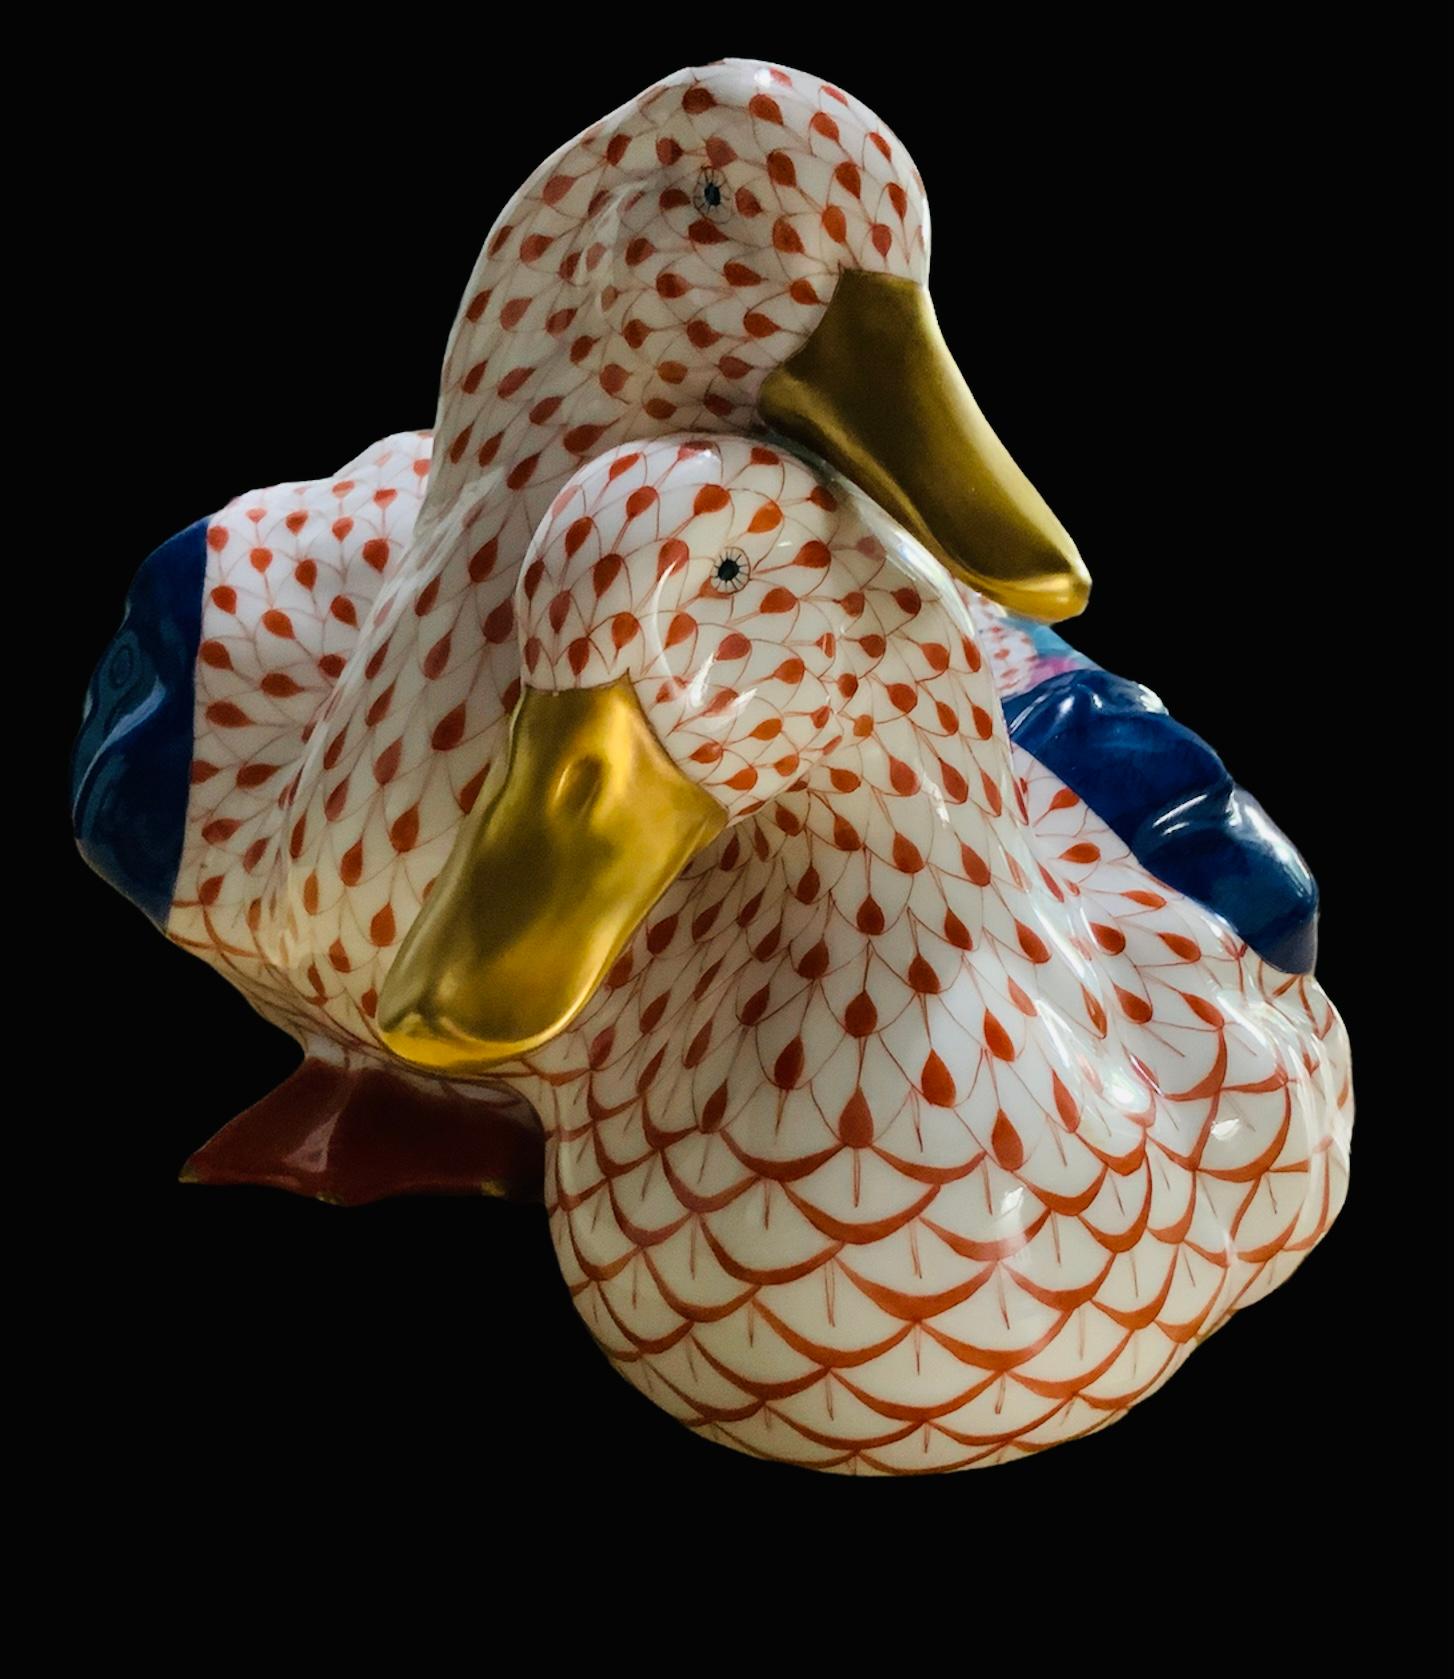 Il s'agit d'une paire de canards de taille moyenne en porcelaine Herend peints à la main. Leur fond est blanc avec un motif de filet en écailles de poisson orange. Leurs ailes sont peintes à la main en bleu marine, rose et turquoise. Les plumes de